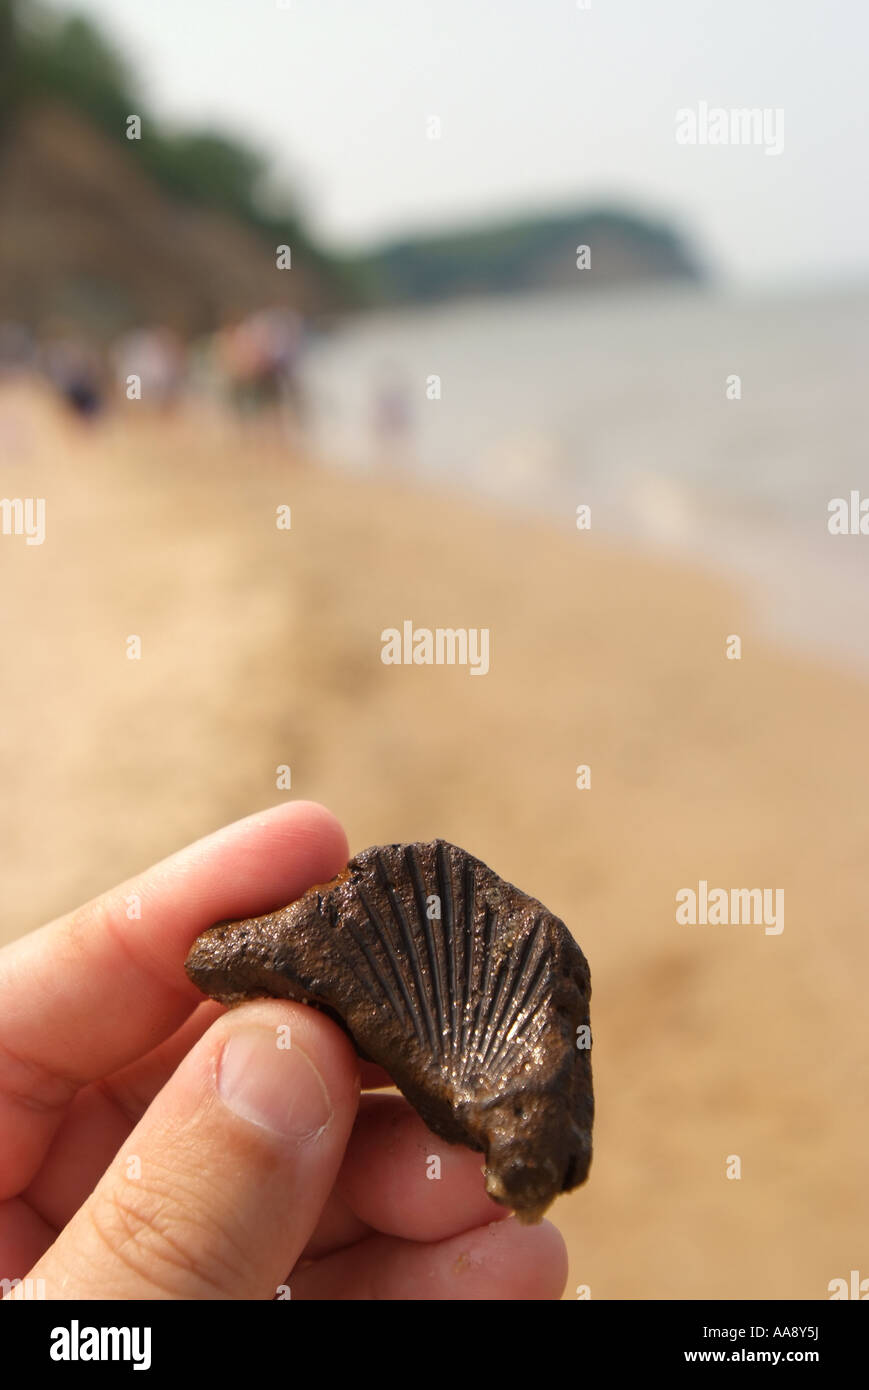 Estados Unidos Maryland Calvert Cliffs State Park una mano sostiene una concha fósil encontrado en la playa Foto de stock